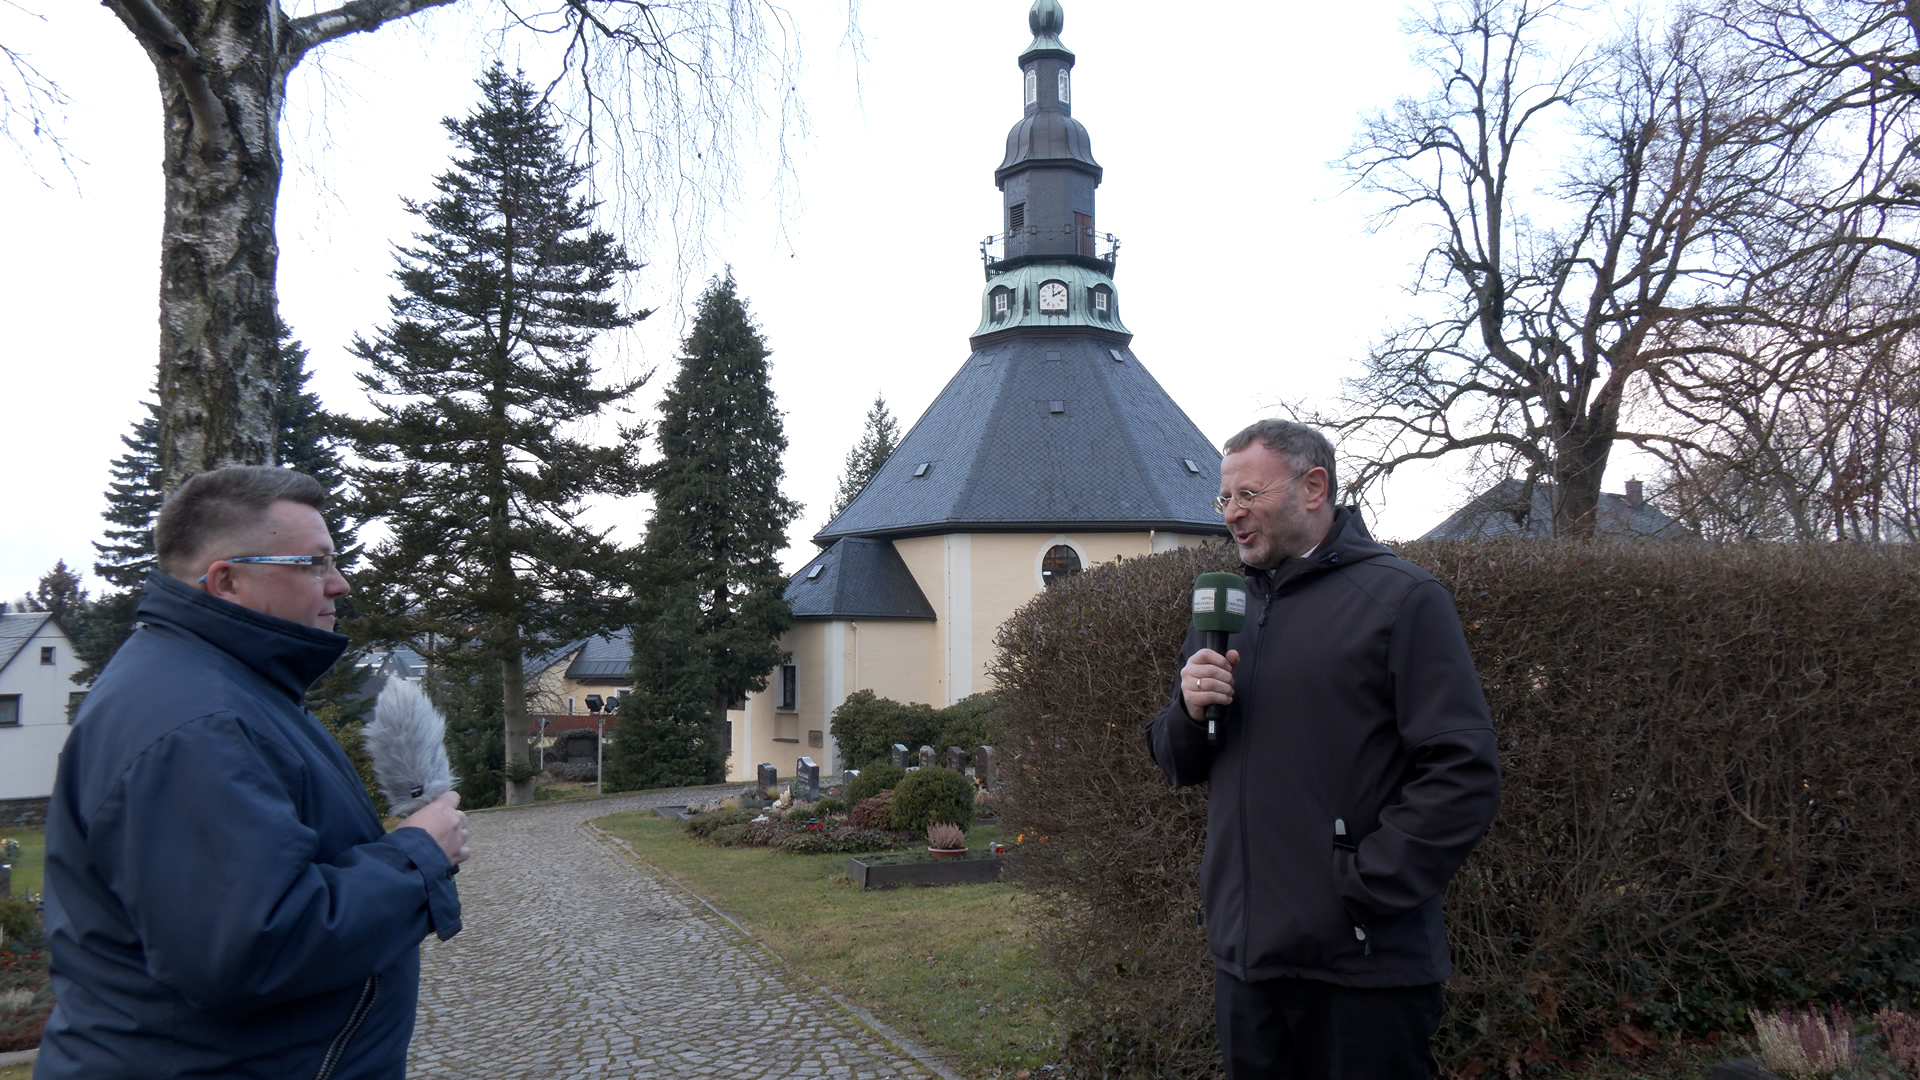 MEgional am 16. Dezember mit einem Interview mit Pfarrer Michael Harzer